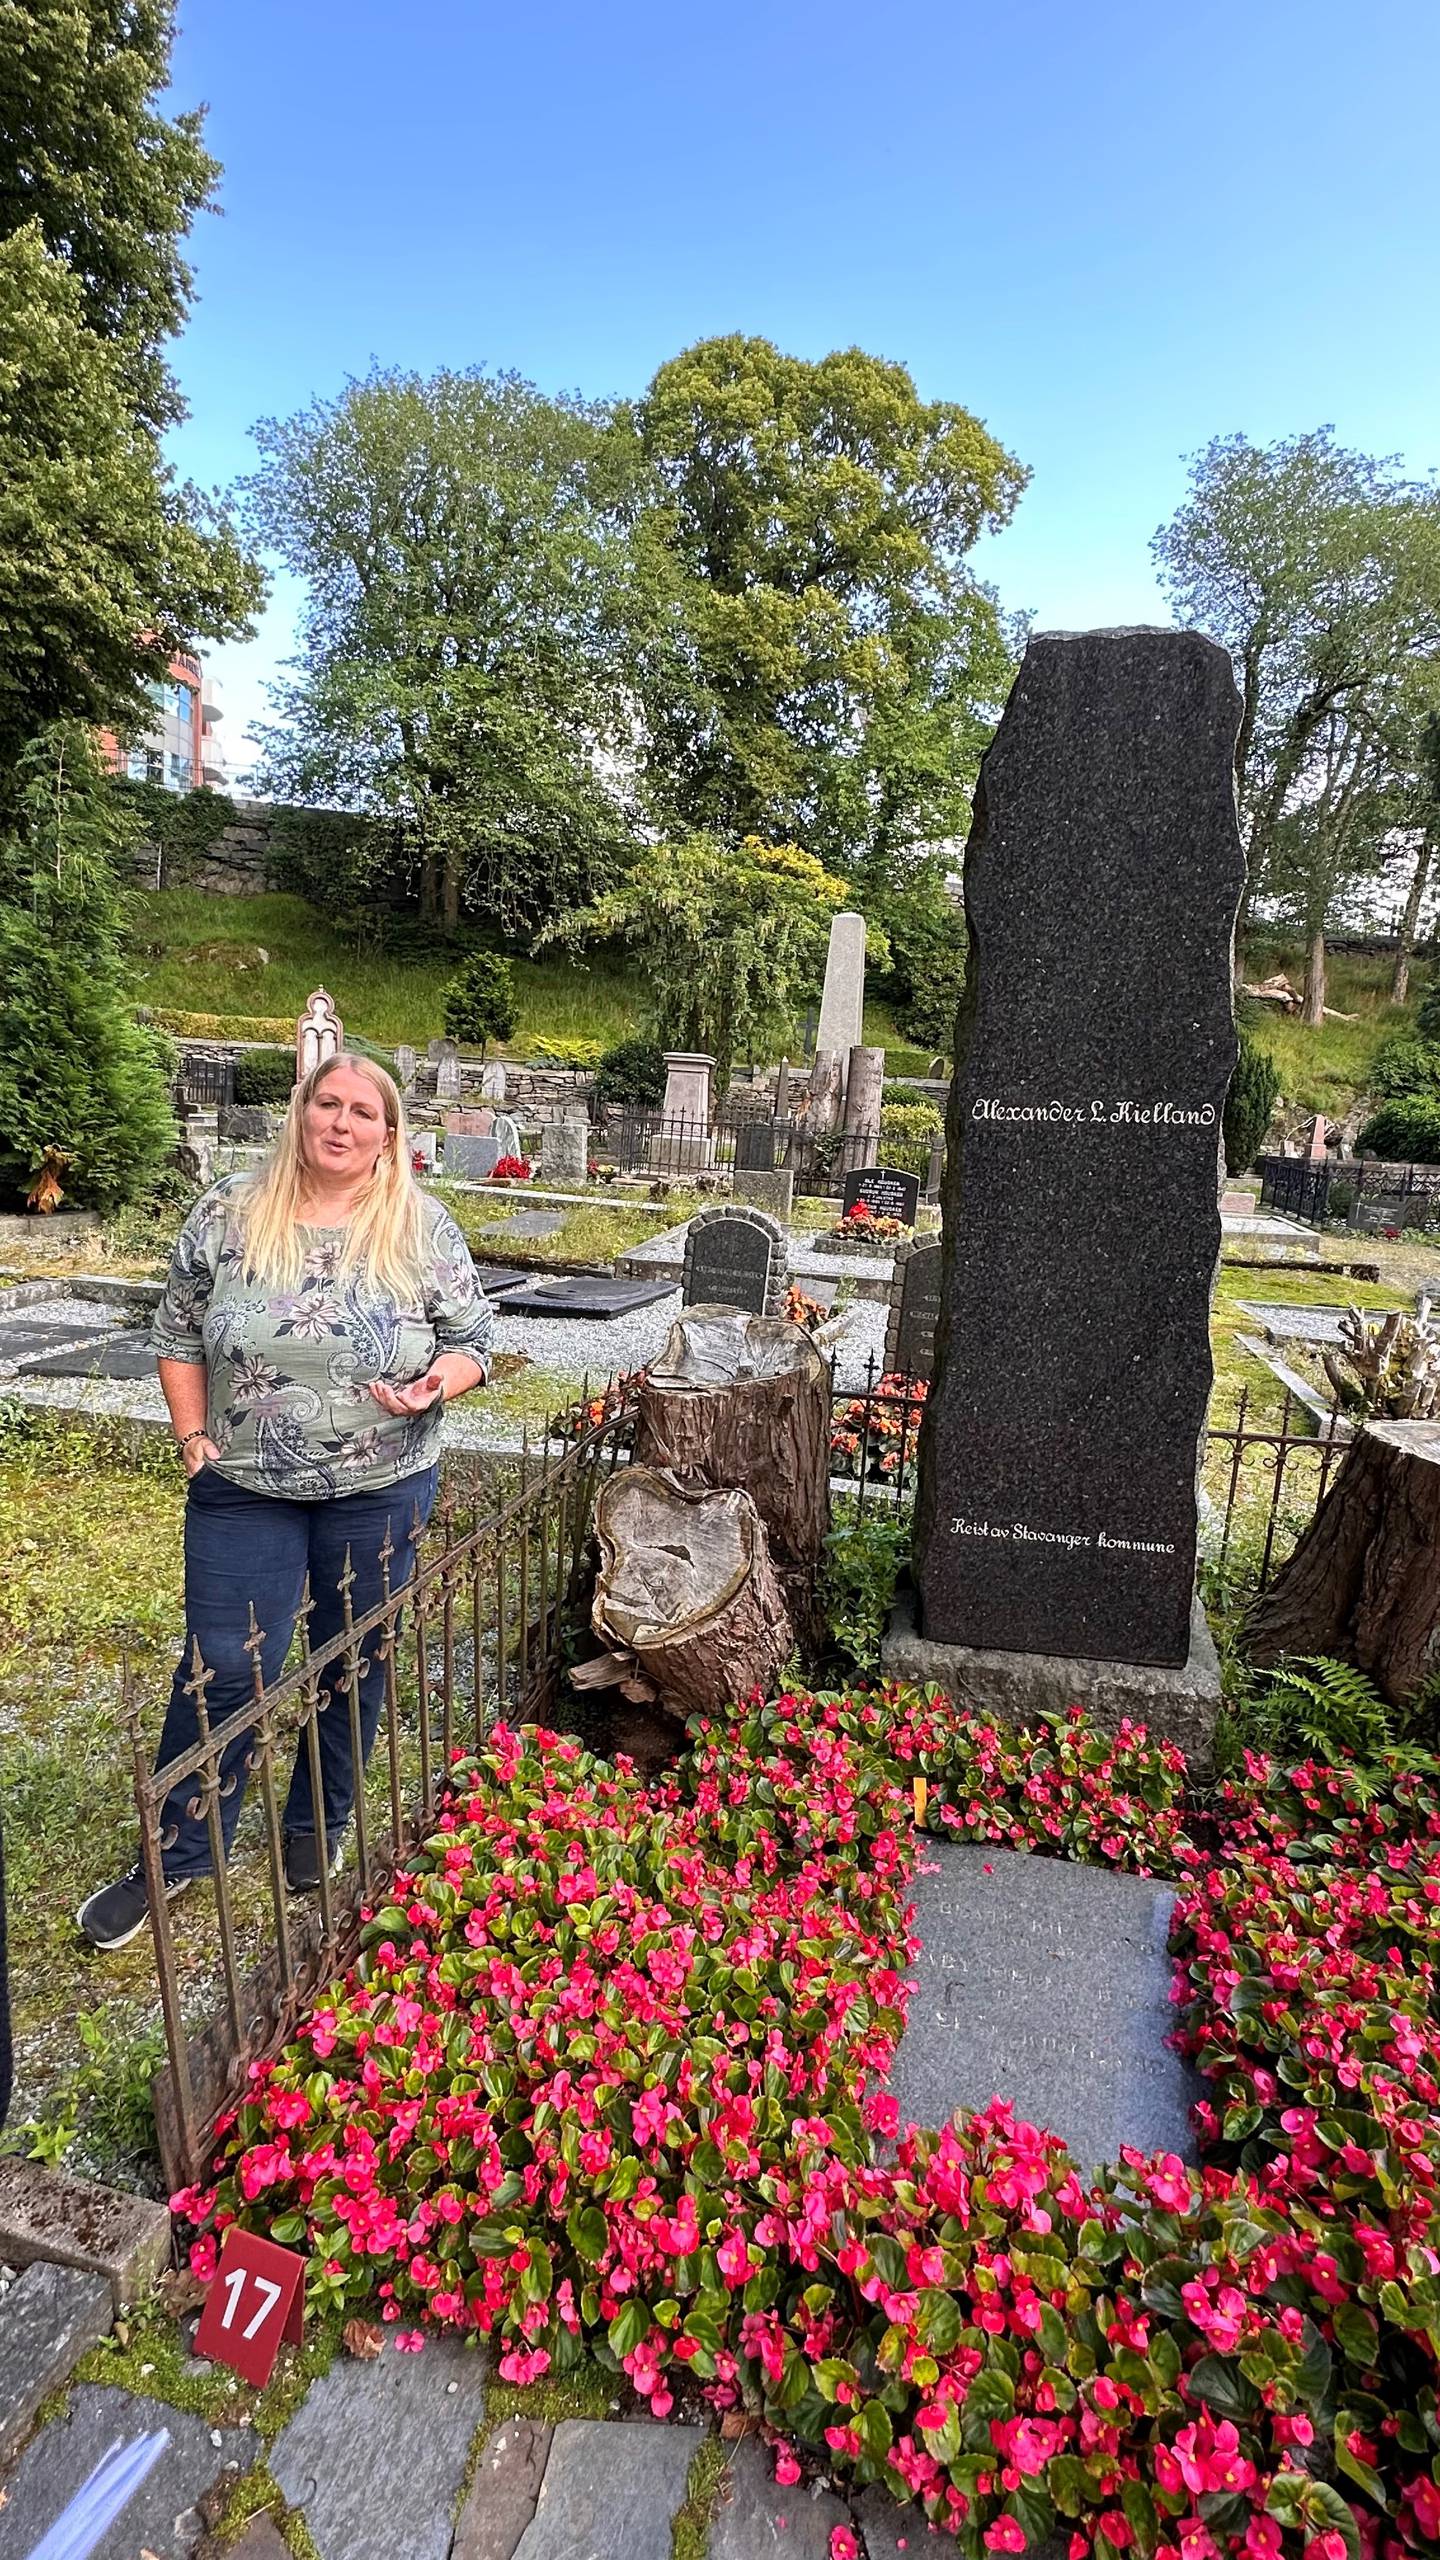 Det står ingen dato om når Kielland ble født eller når han døde på steinen. Det er heller ingen informasjonstavle ved graven om hvem Alexander Kielland var og hva ha betyde for byen.